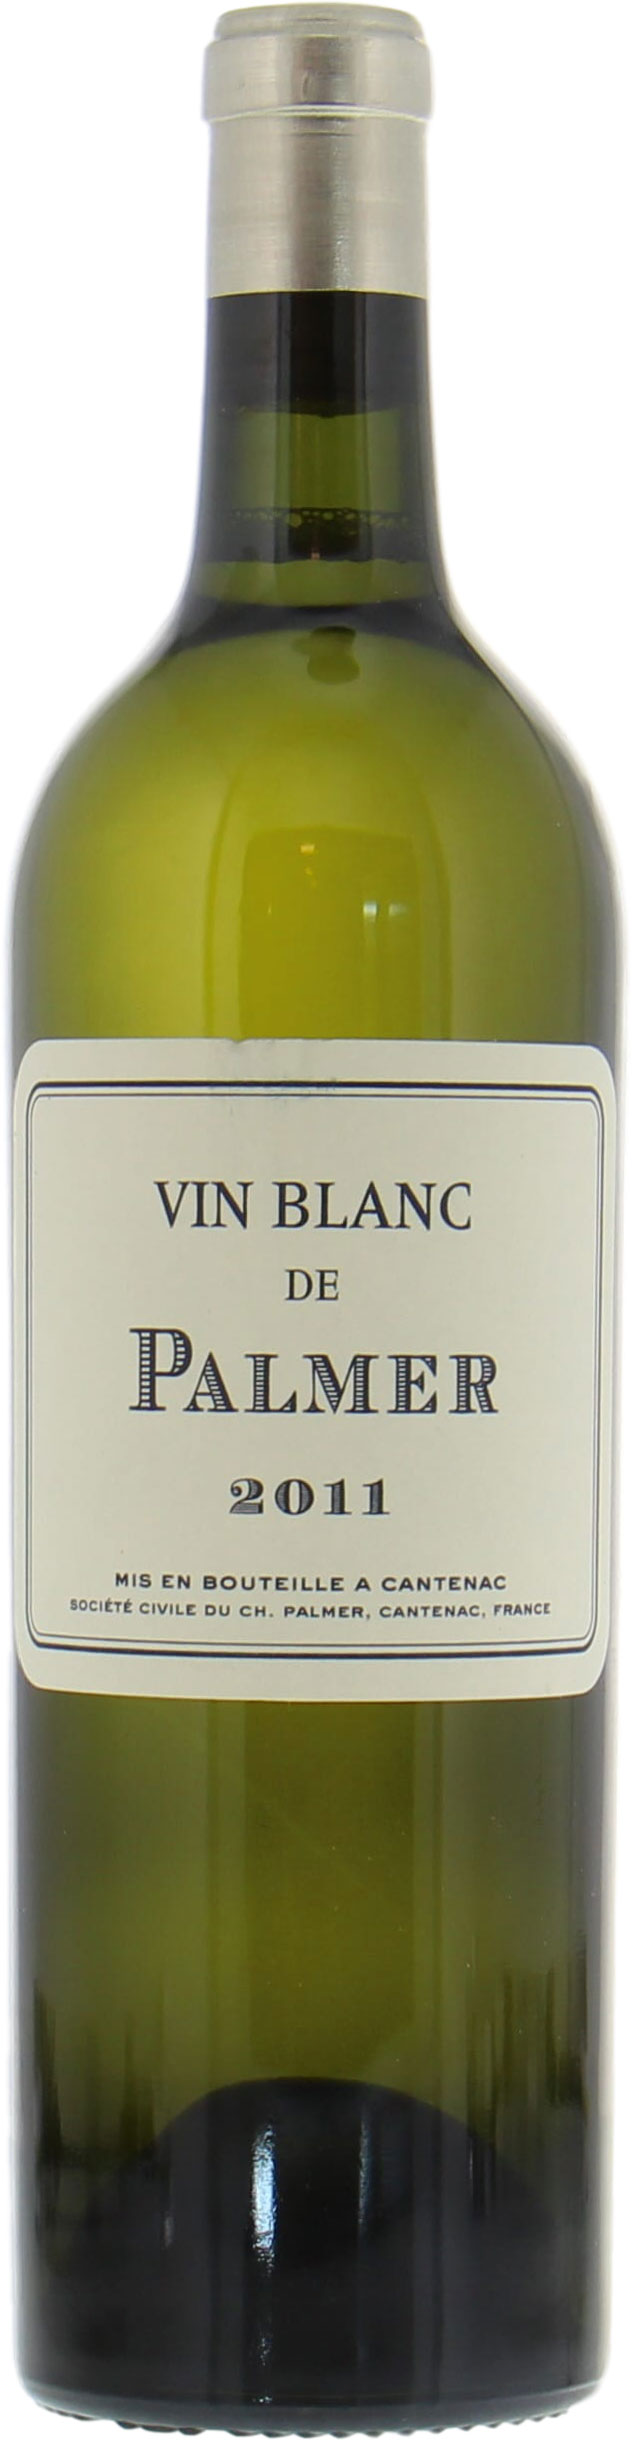 Chateau Palmer - Vin Blanc de Palmer 2011